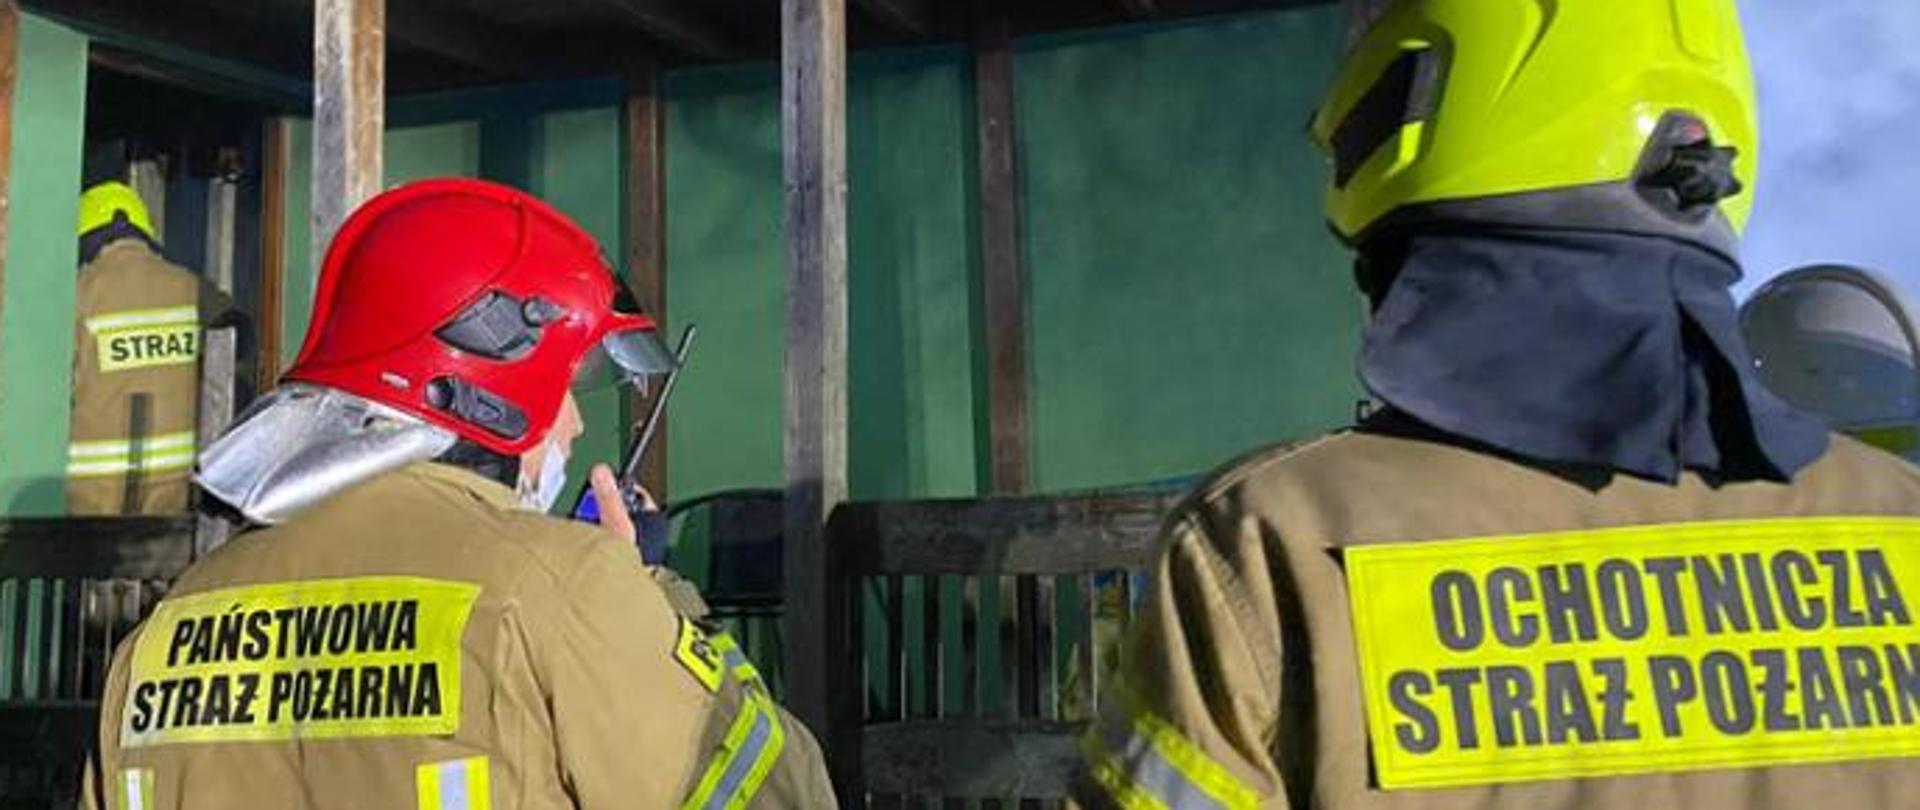 Zdjęcie przedstawia strażaków Państwowej i Ochotniczej Straży Pożarnej podczas działań ratowniczo-gaśniczych.